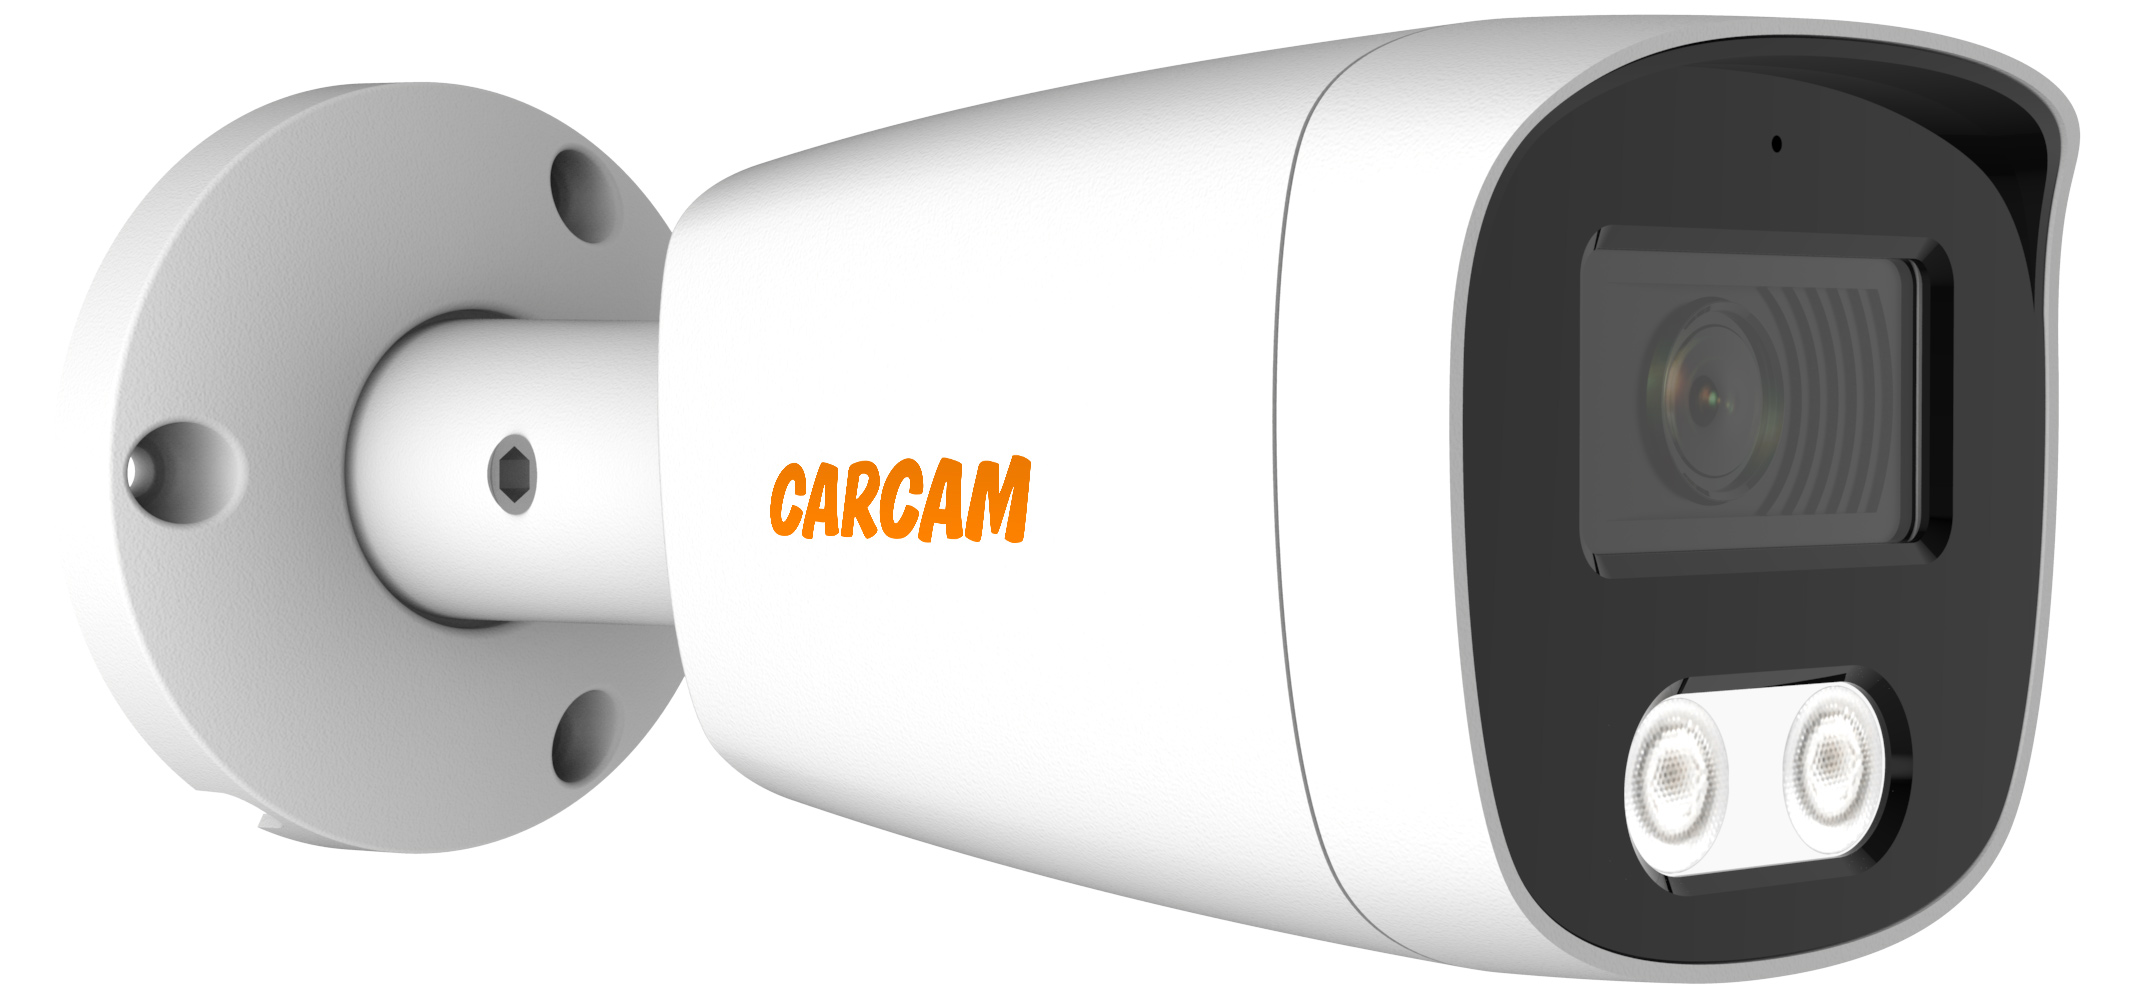 Цилиндрическая AHD камера CARCAM 5MP Bullet HD Camera 5145 камера видеонаблюдения carcam 8mp bullet ip camera 8170sdm